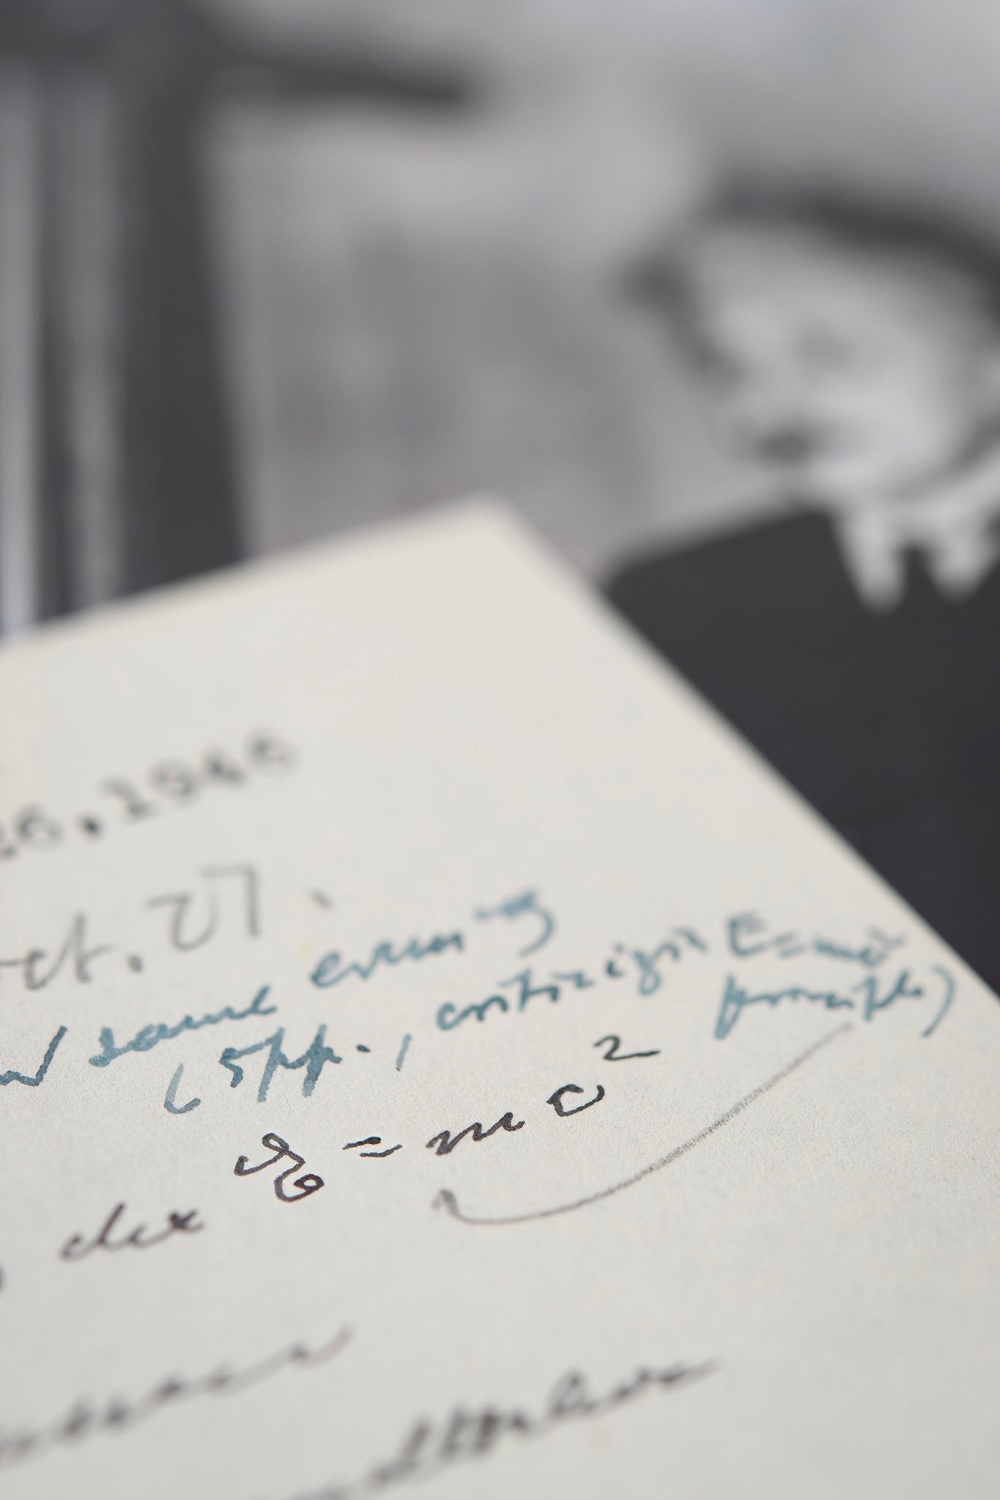 Carta de Einstein contendo a famosa fórmula E=mc2 é leiloada por valor milionário - 1